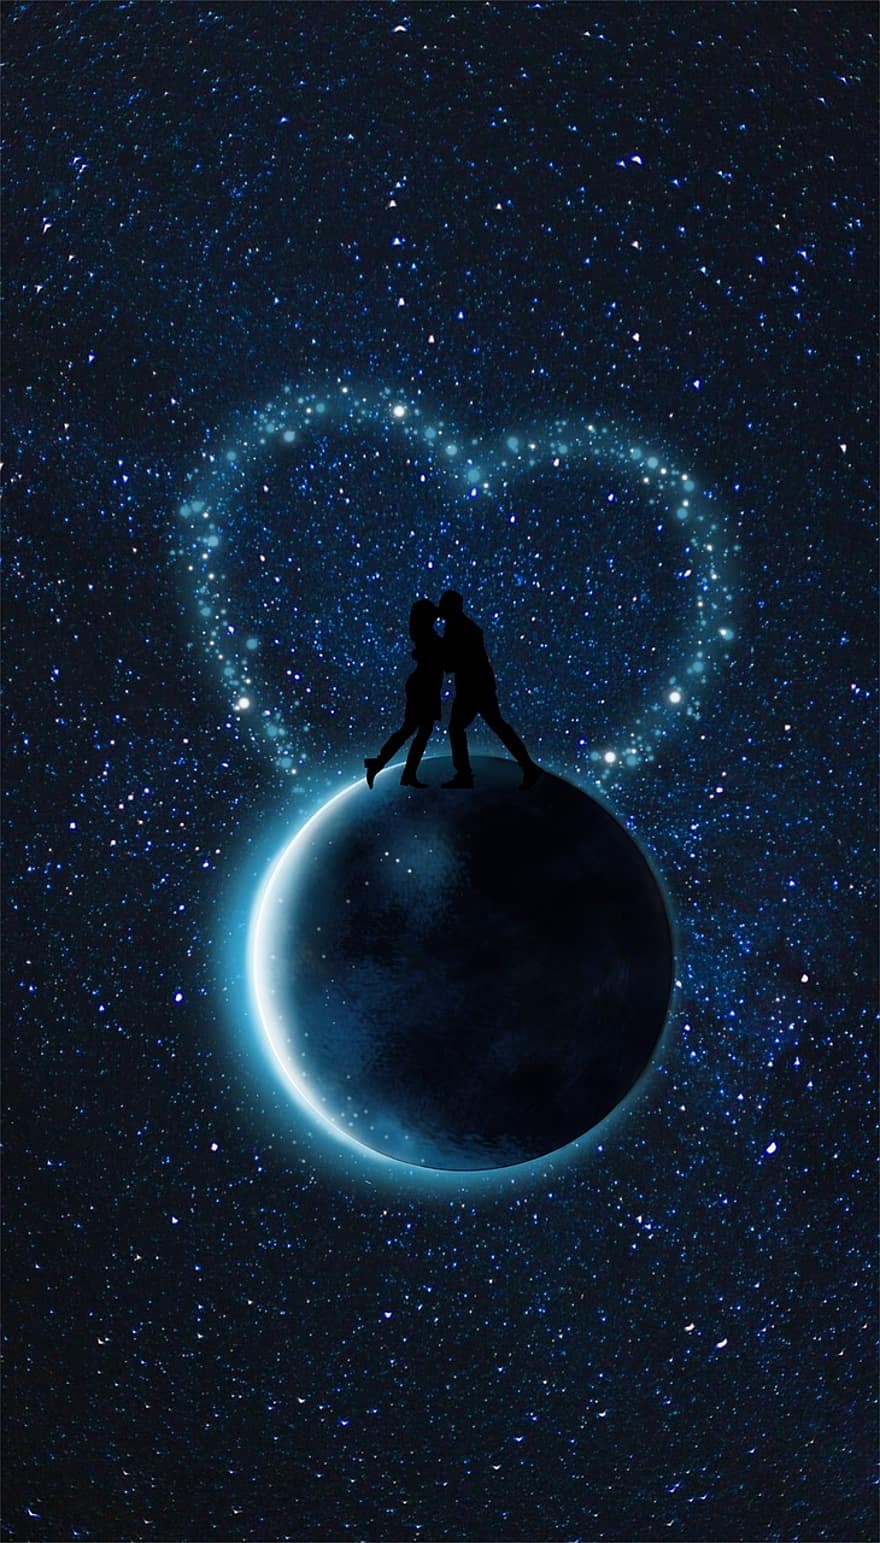 القمر ، زوجين ، قلب ، أزرق ، كون ، نجمة ، يلمع ، حب ، القبلات ، رومانسي